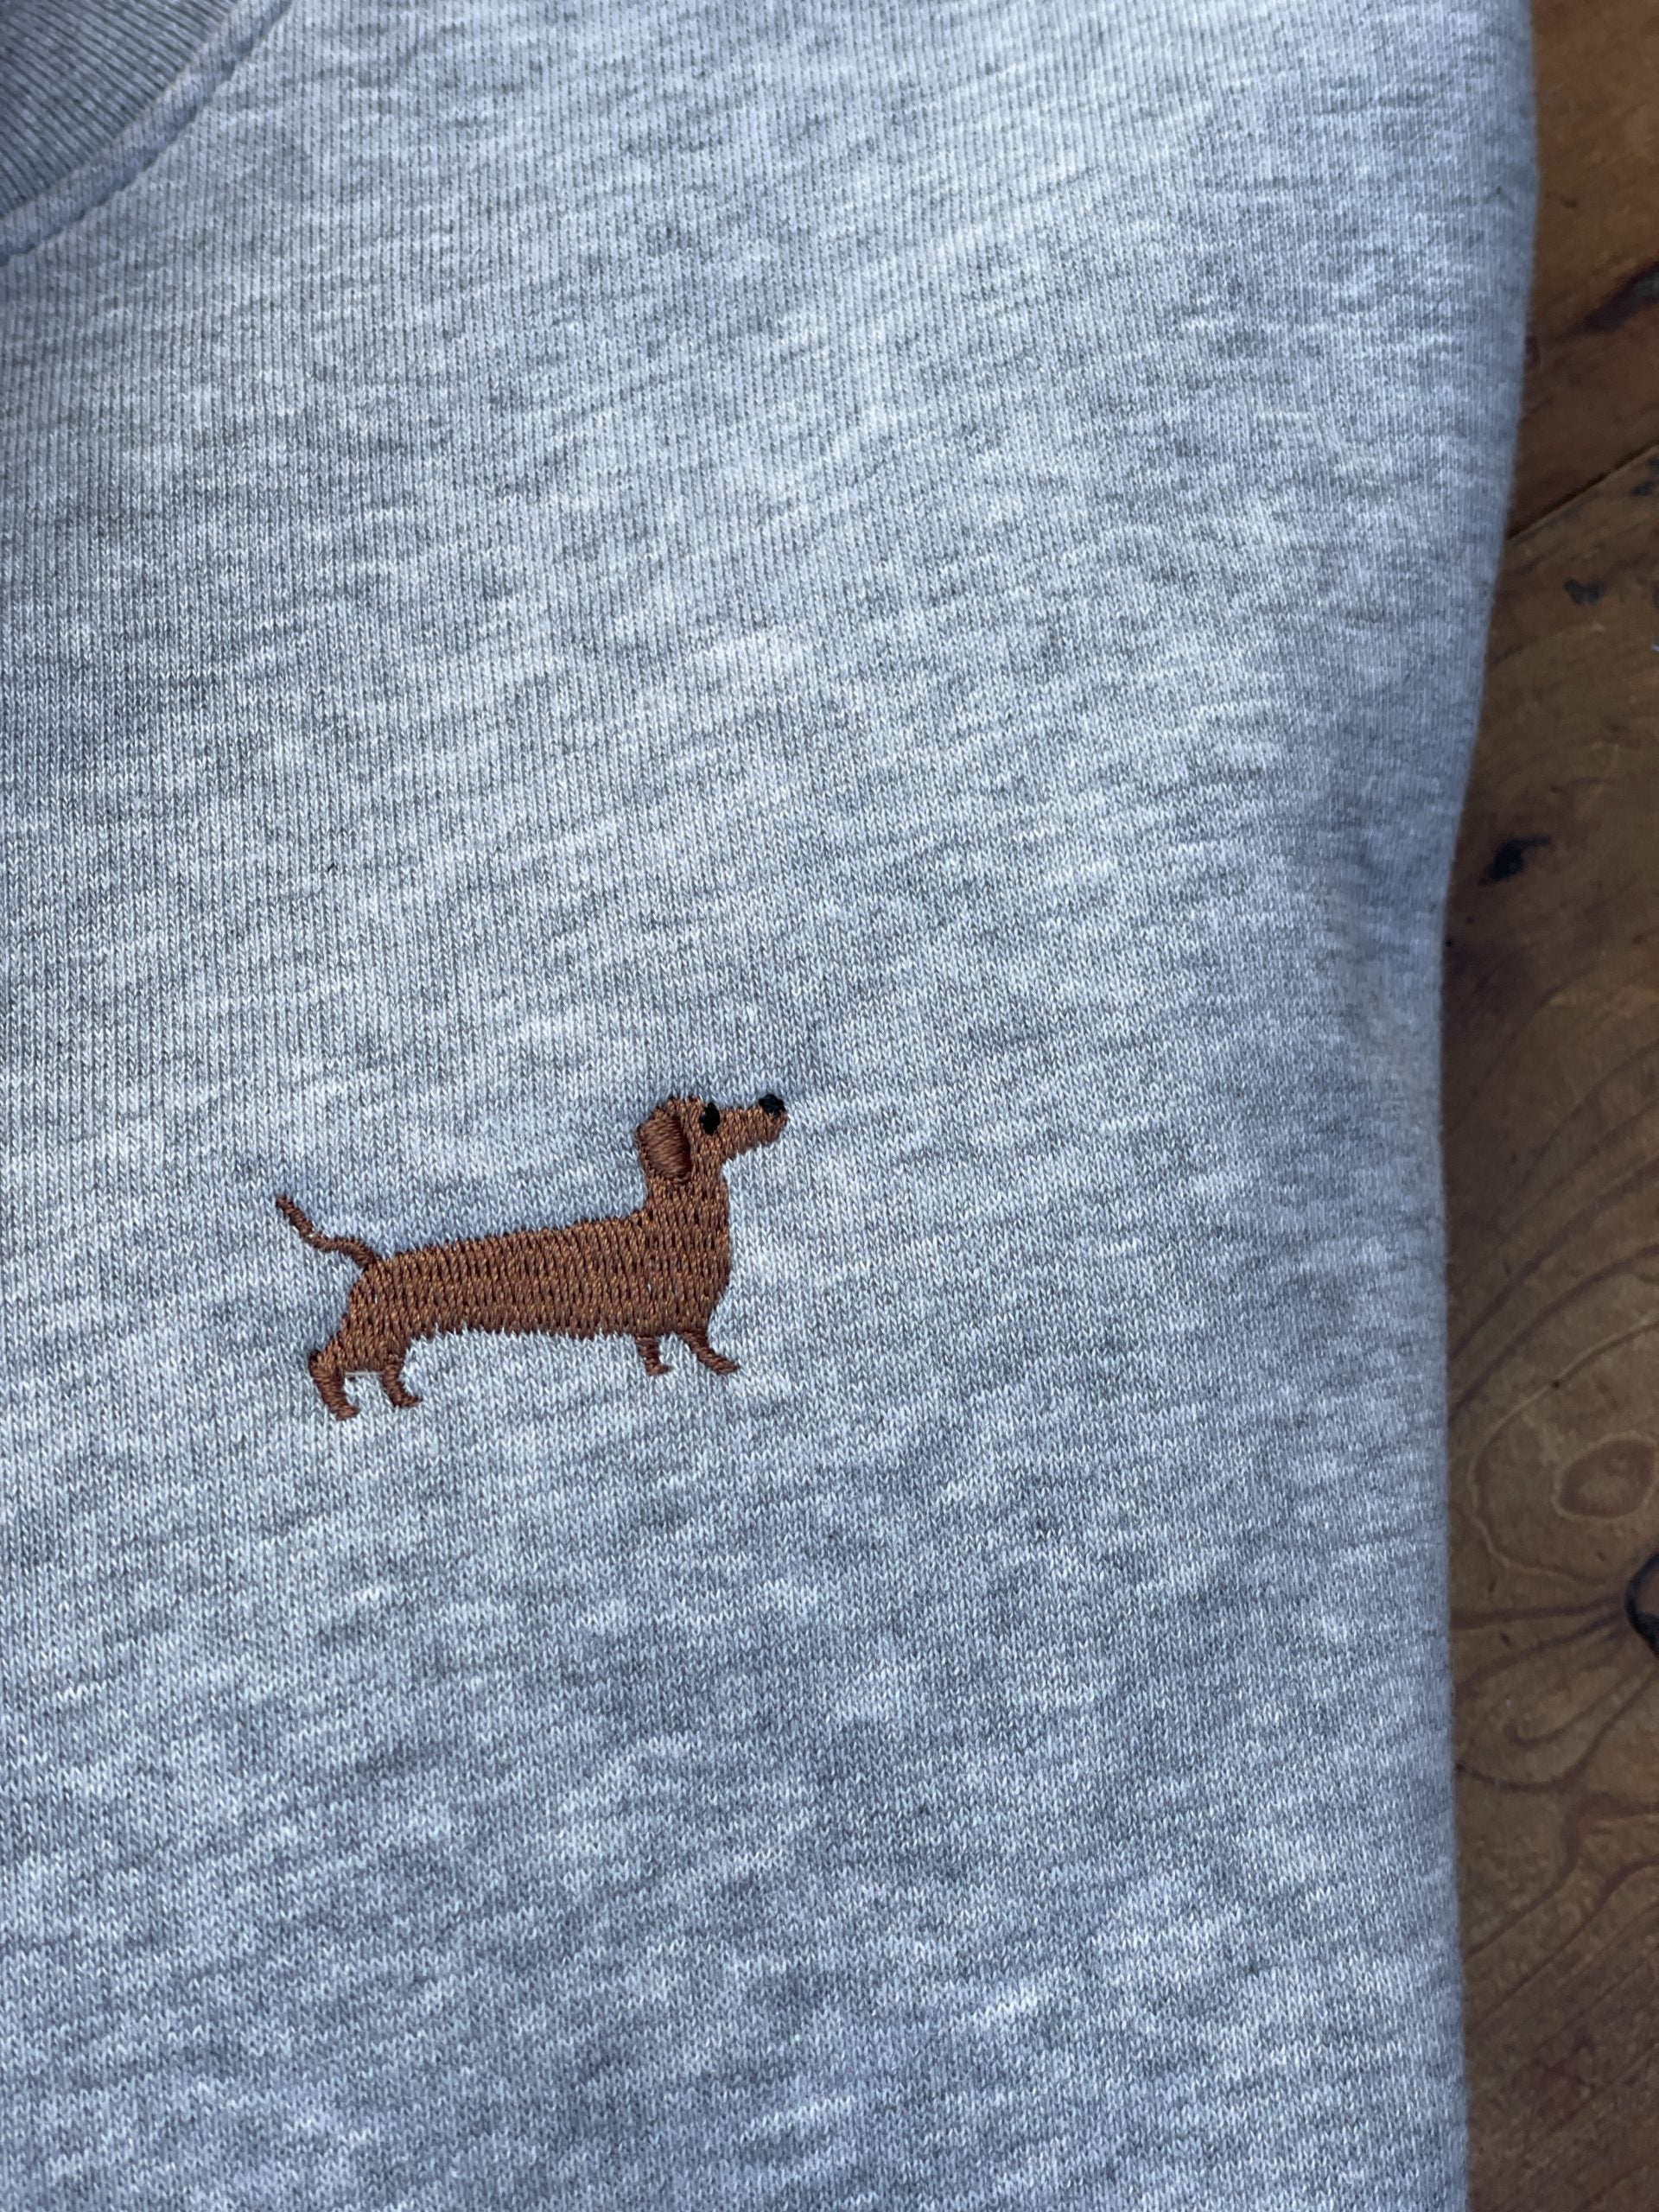 Sweatshirt mit Dackel-Stick - tierly-Kollektion - Bekleidung & Accessoires